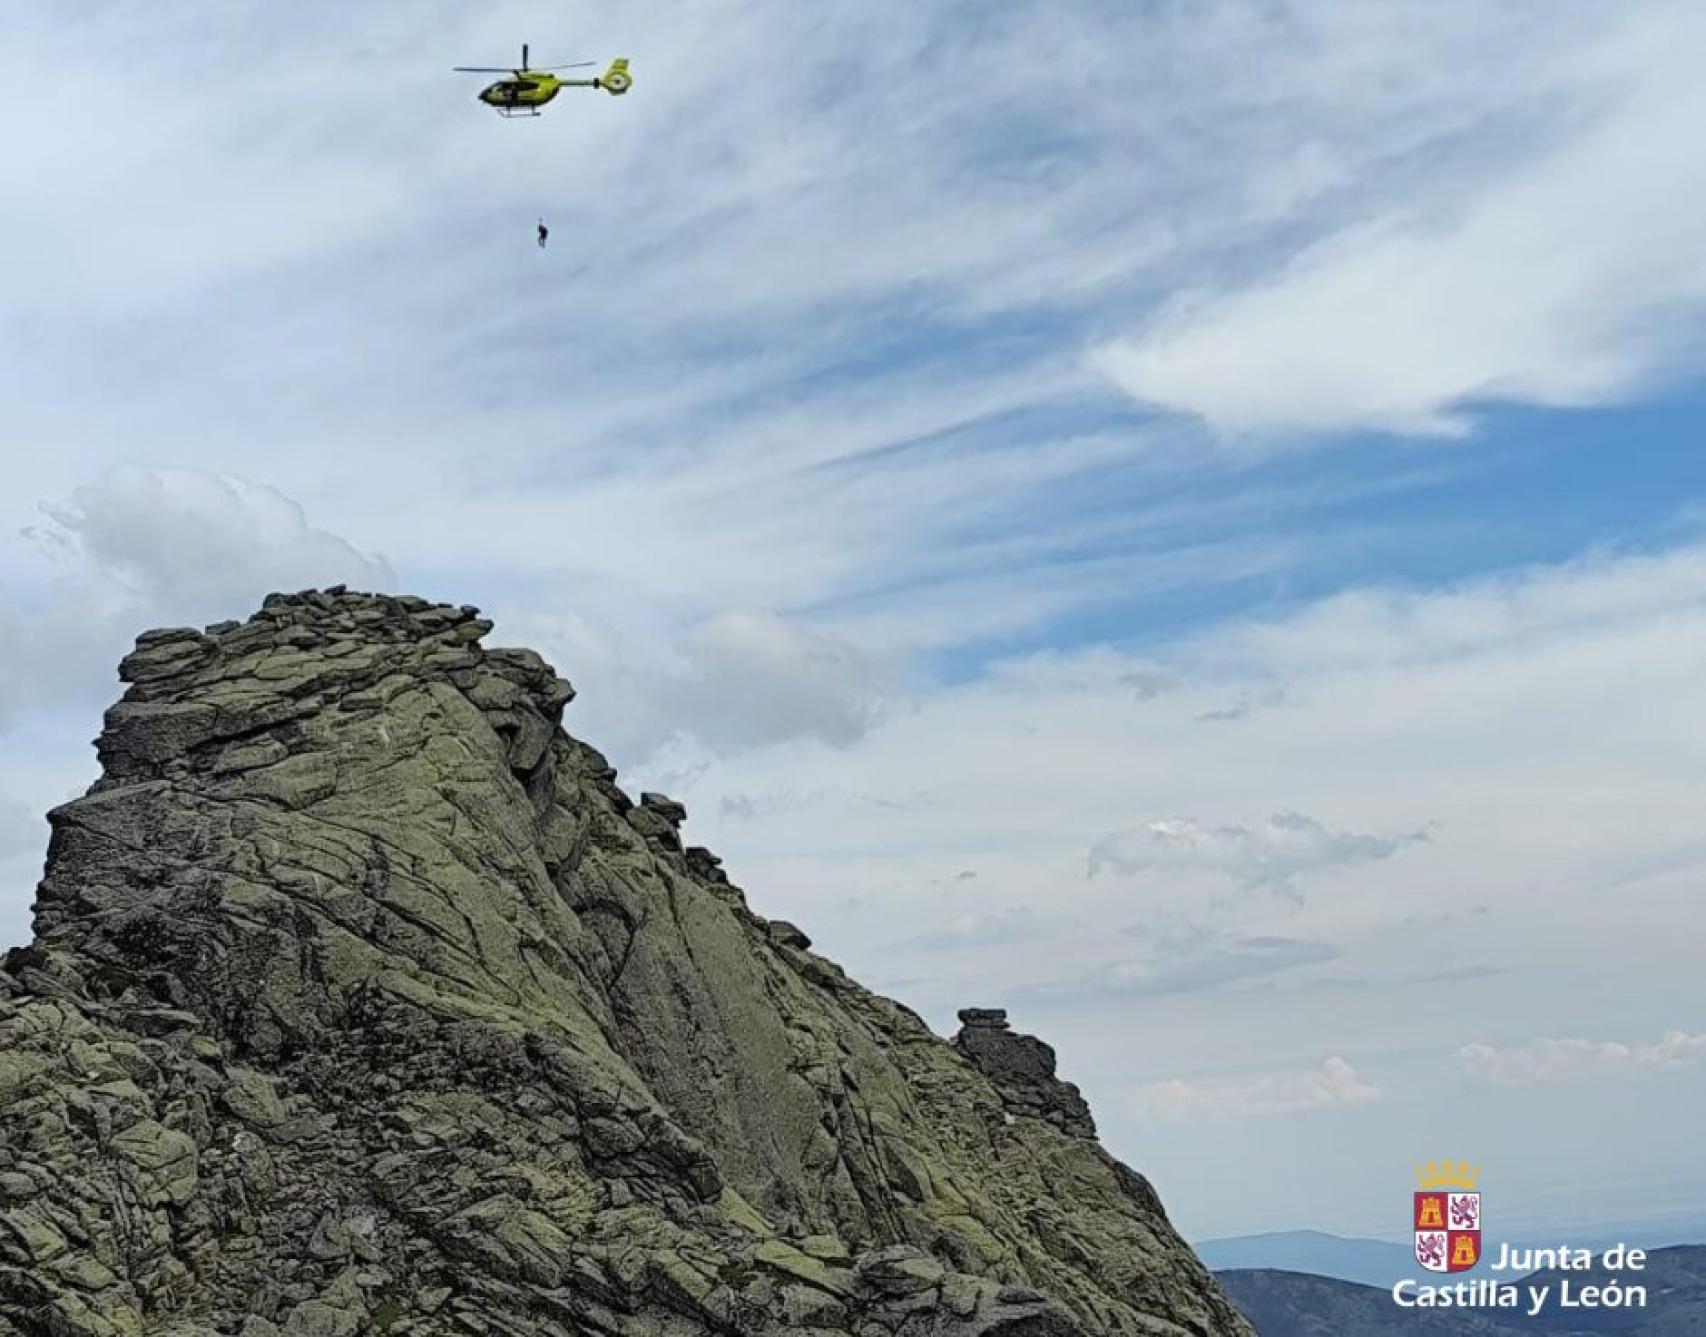 Rescate al montañero herido en la Sierra de Gredos